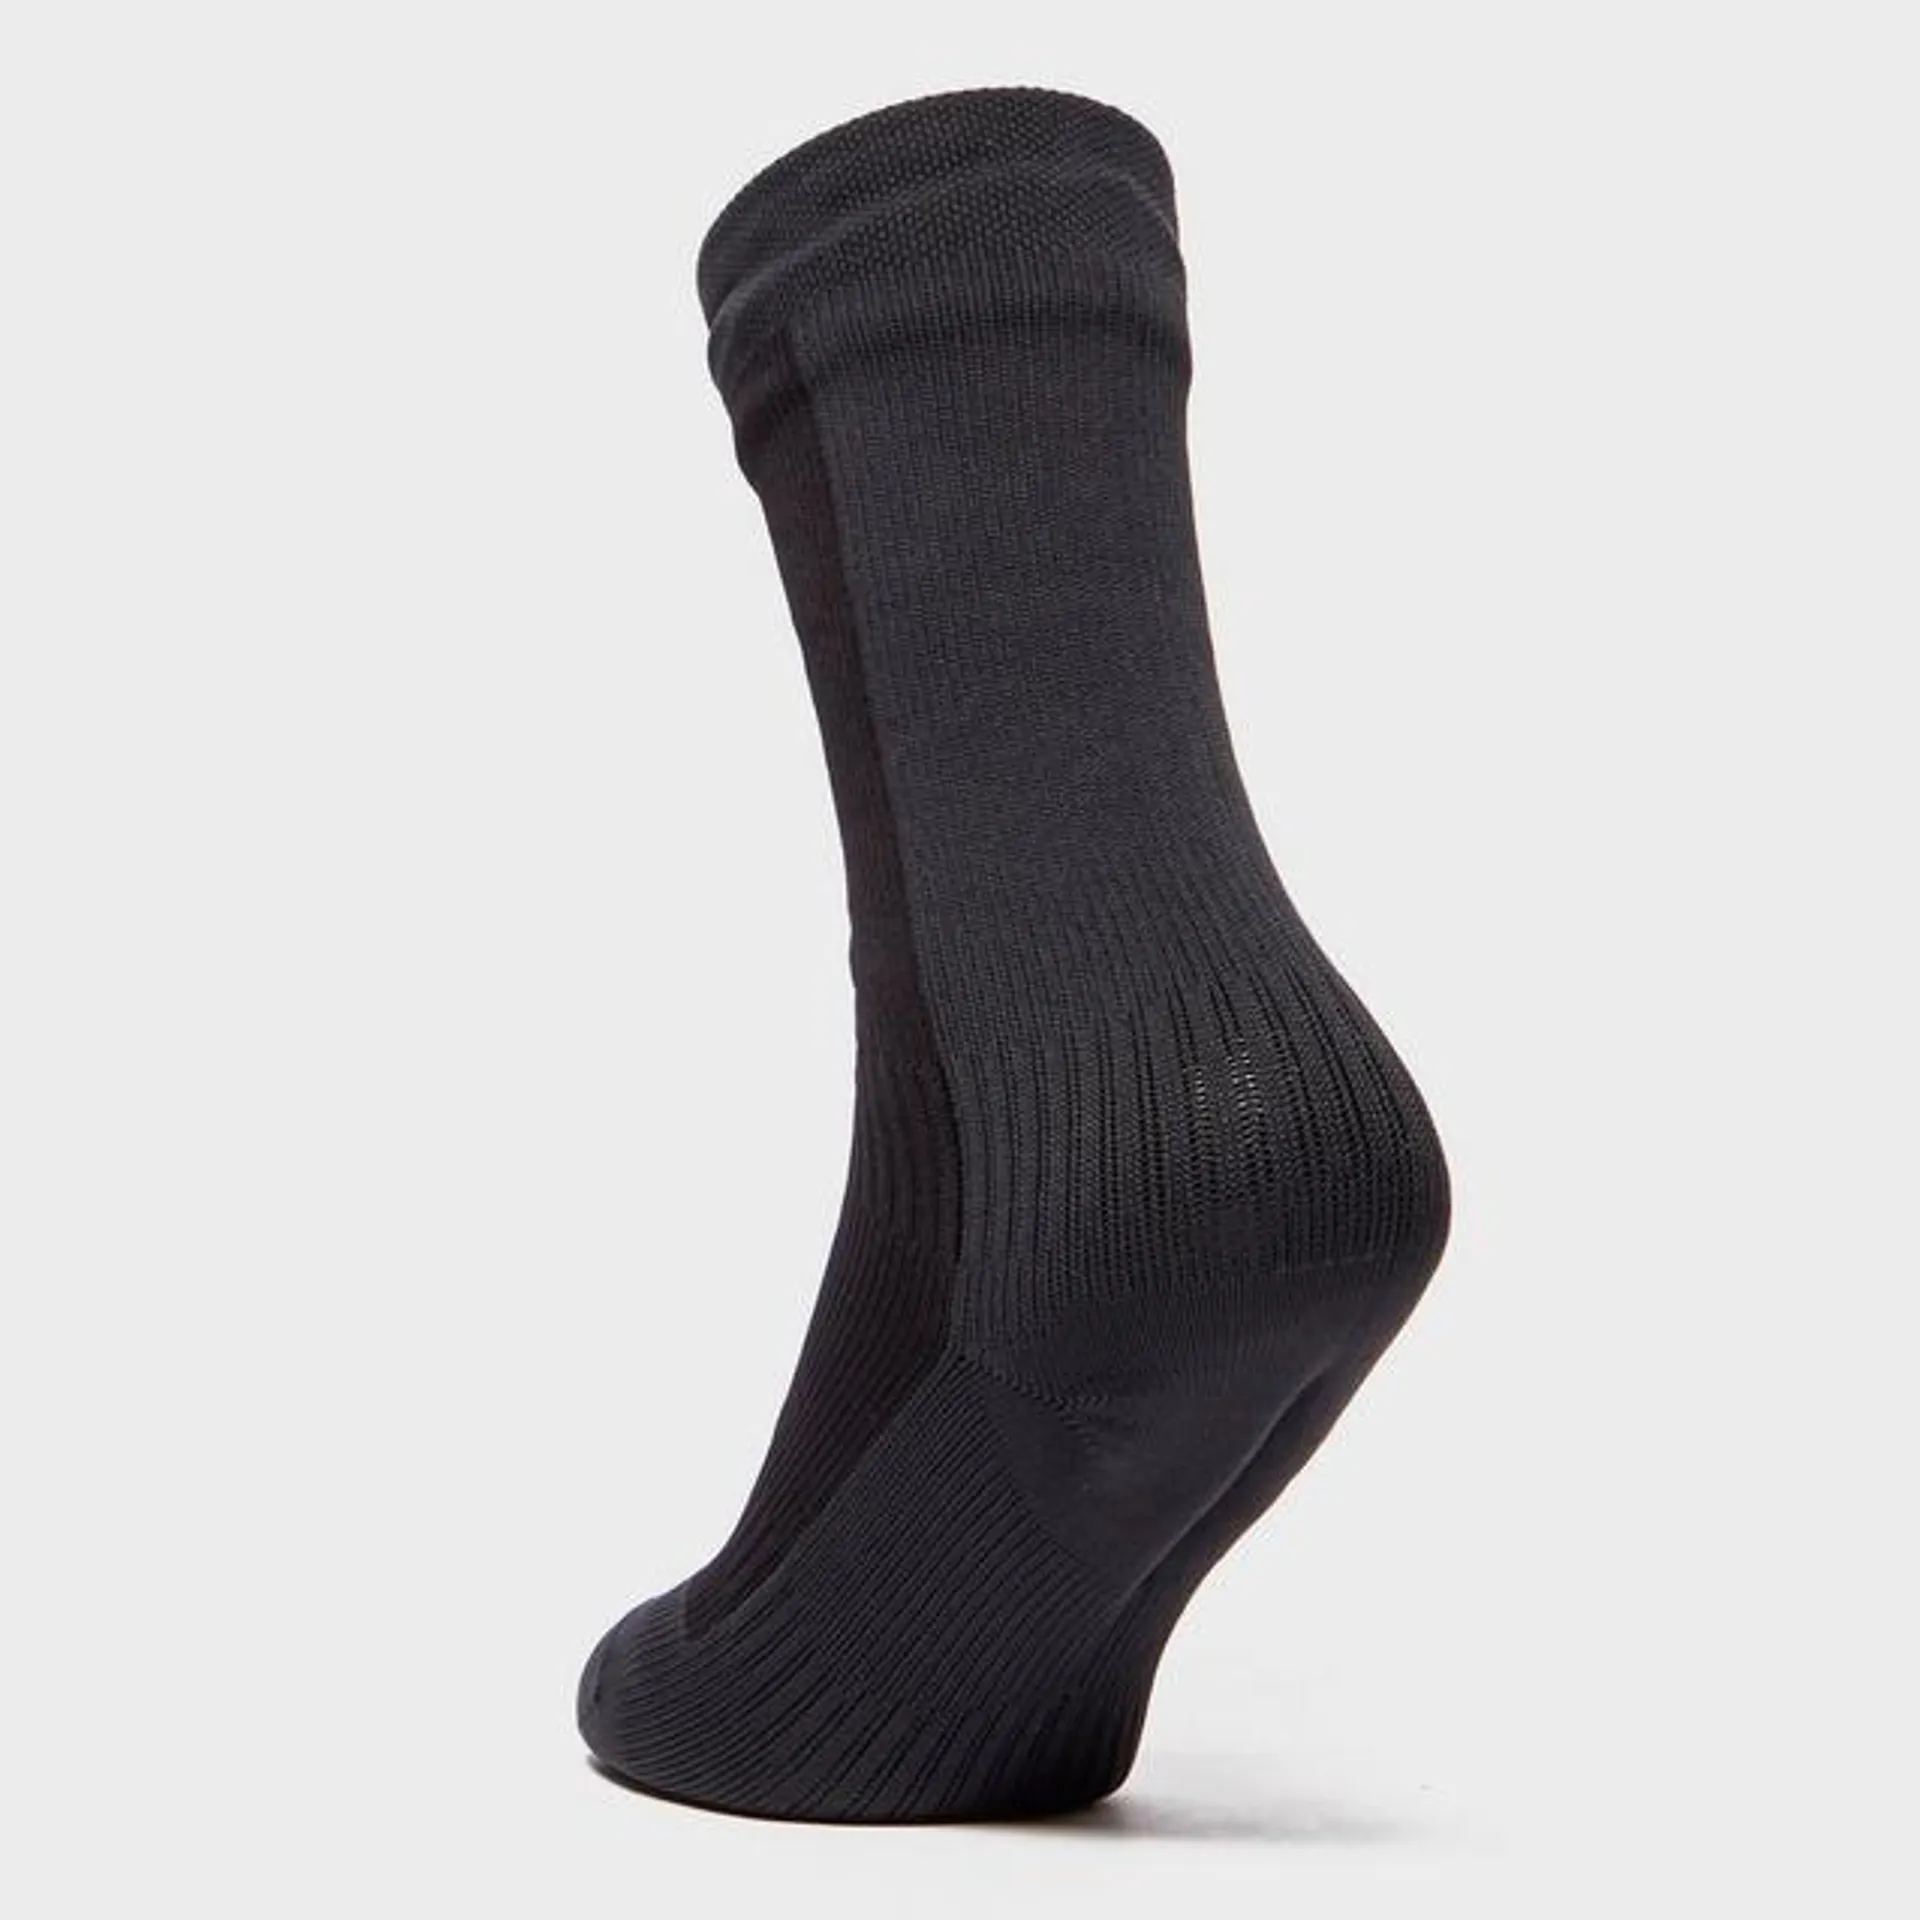 Men's Mid Length Hiking Socks